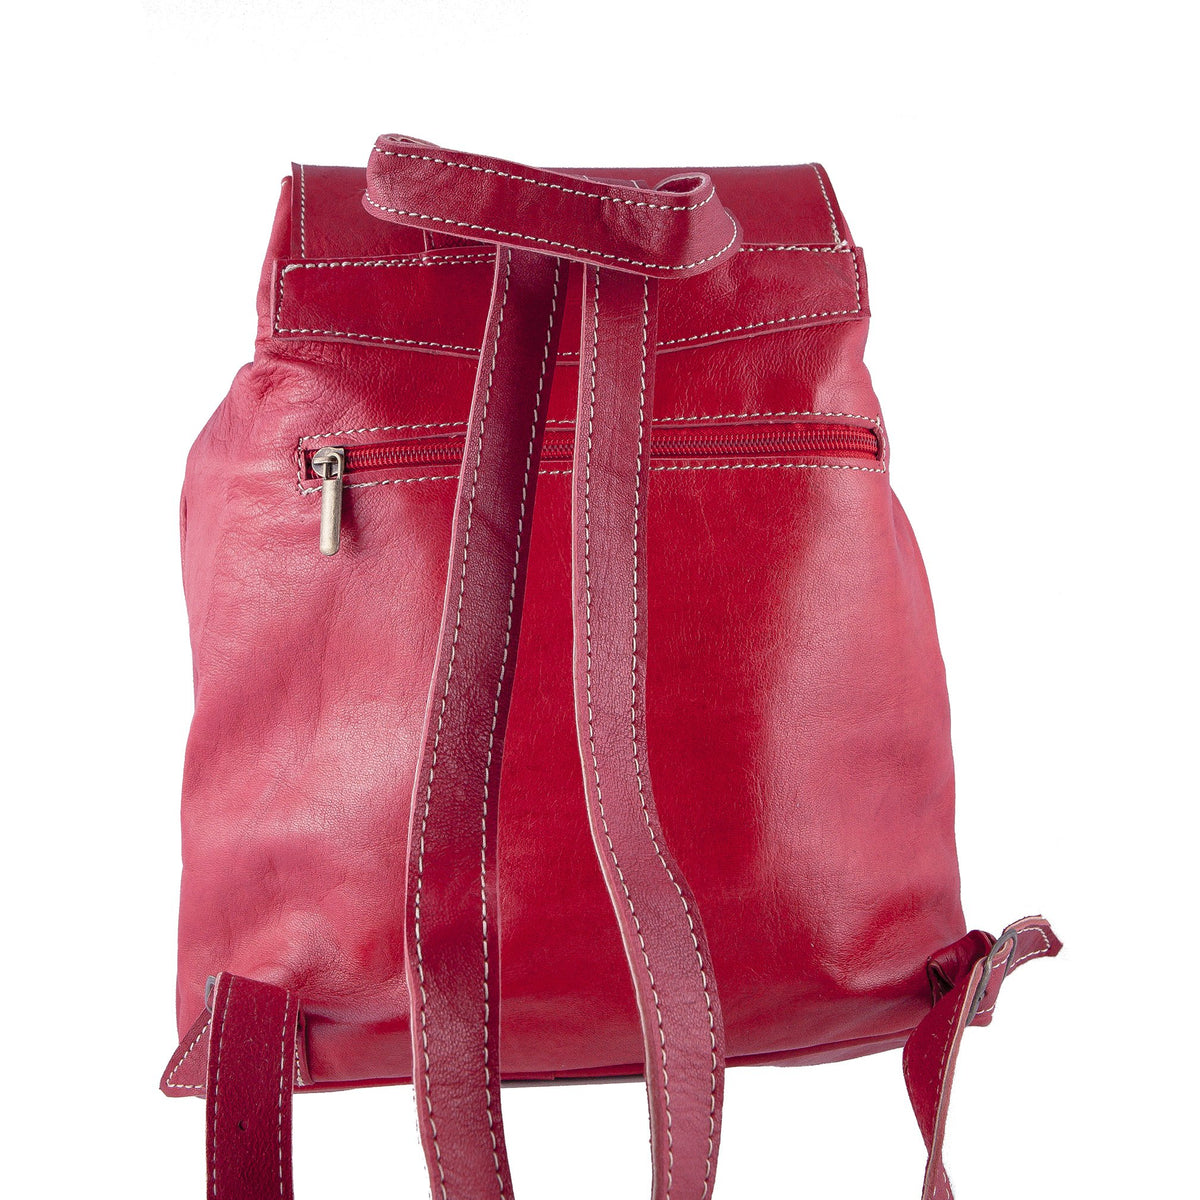 Vintage Style Women's Backpack - Handmade - Dark Brown